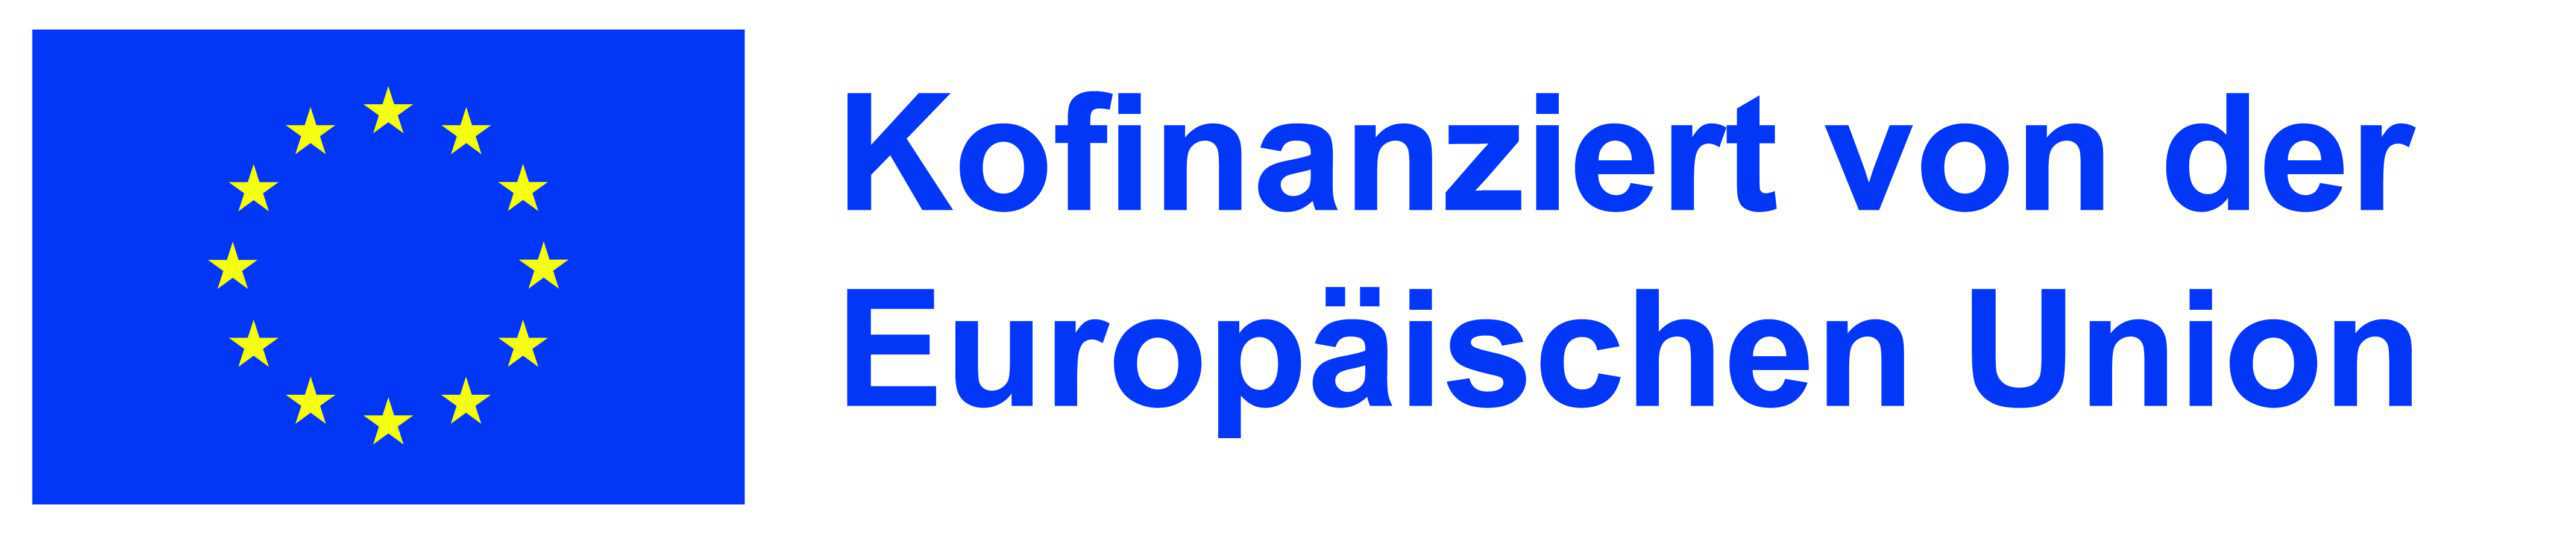 Logo mit Text: Kofinanziert von der Europäischen Union